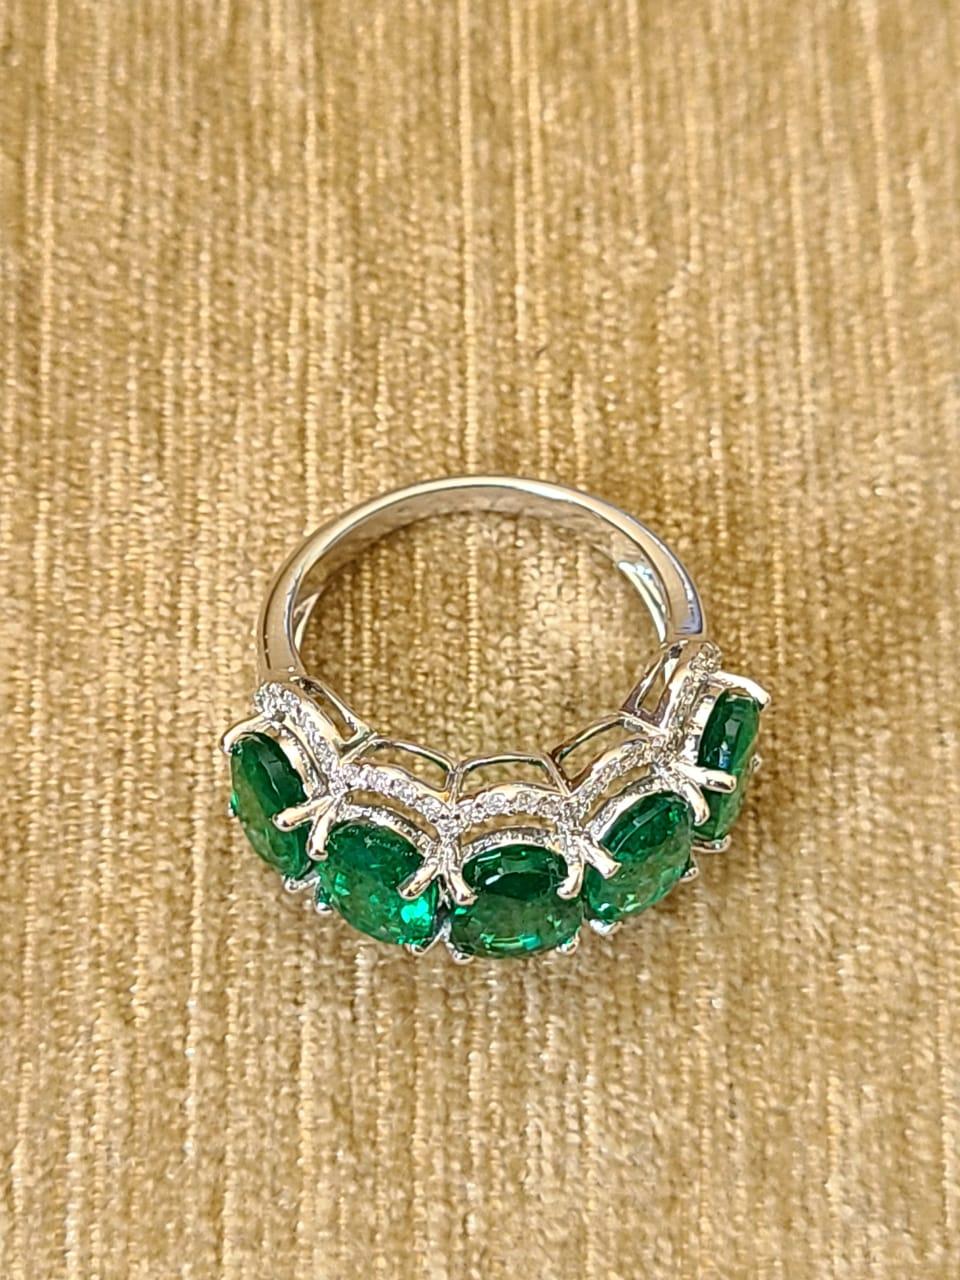 Art Deco 18 Karat Gold, 6.12 Carats Emerald and Diamonds Band Ring